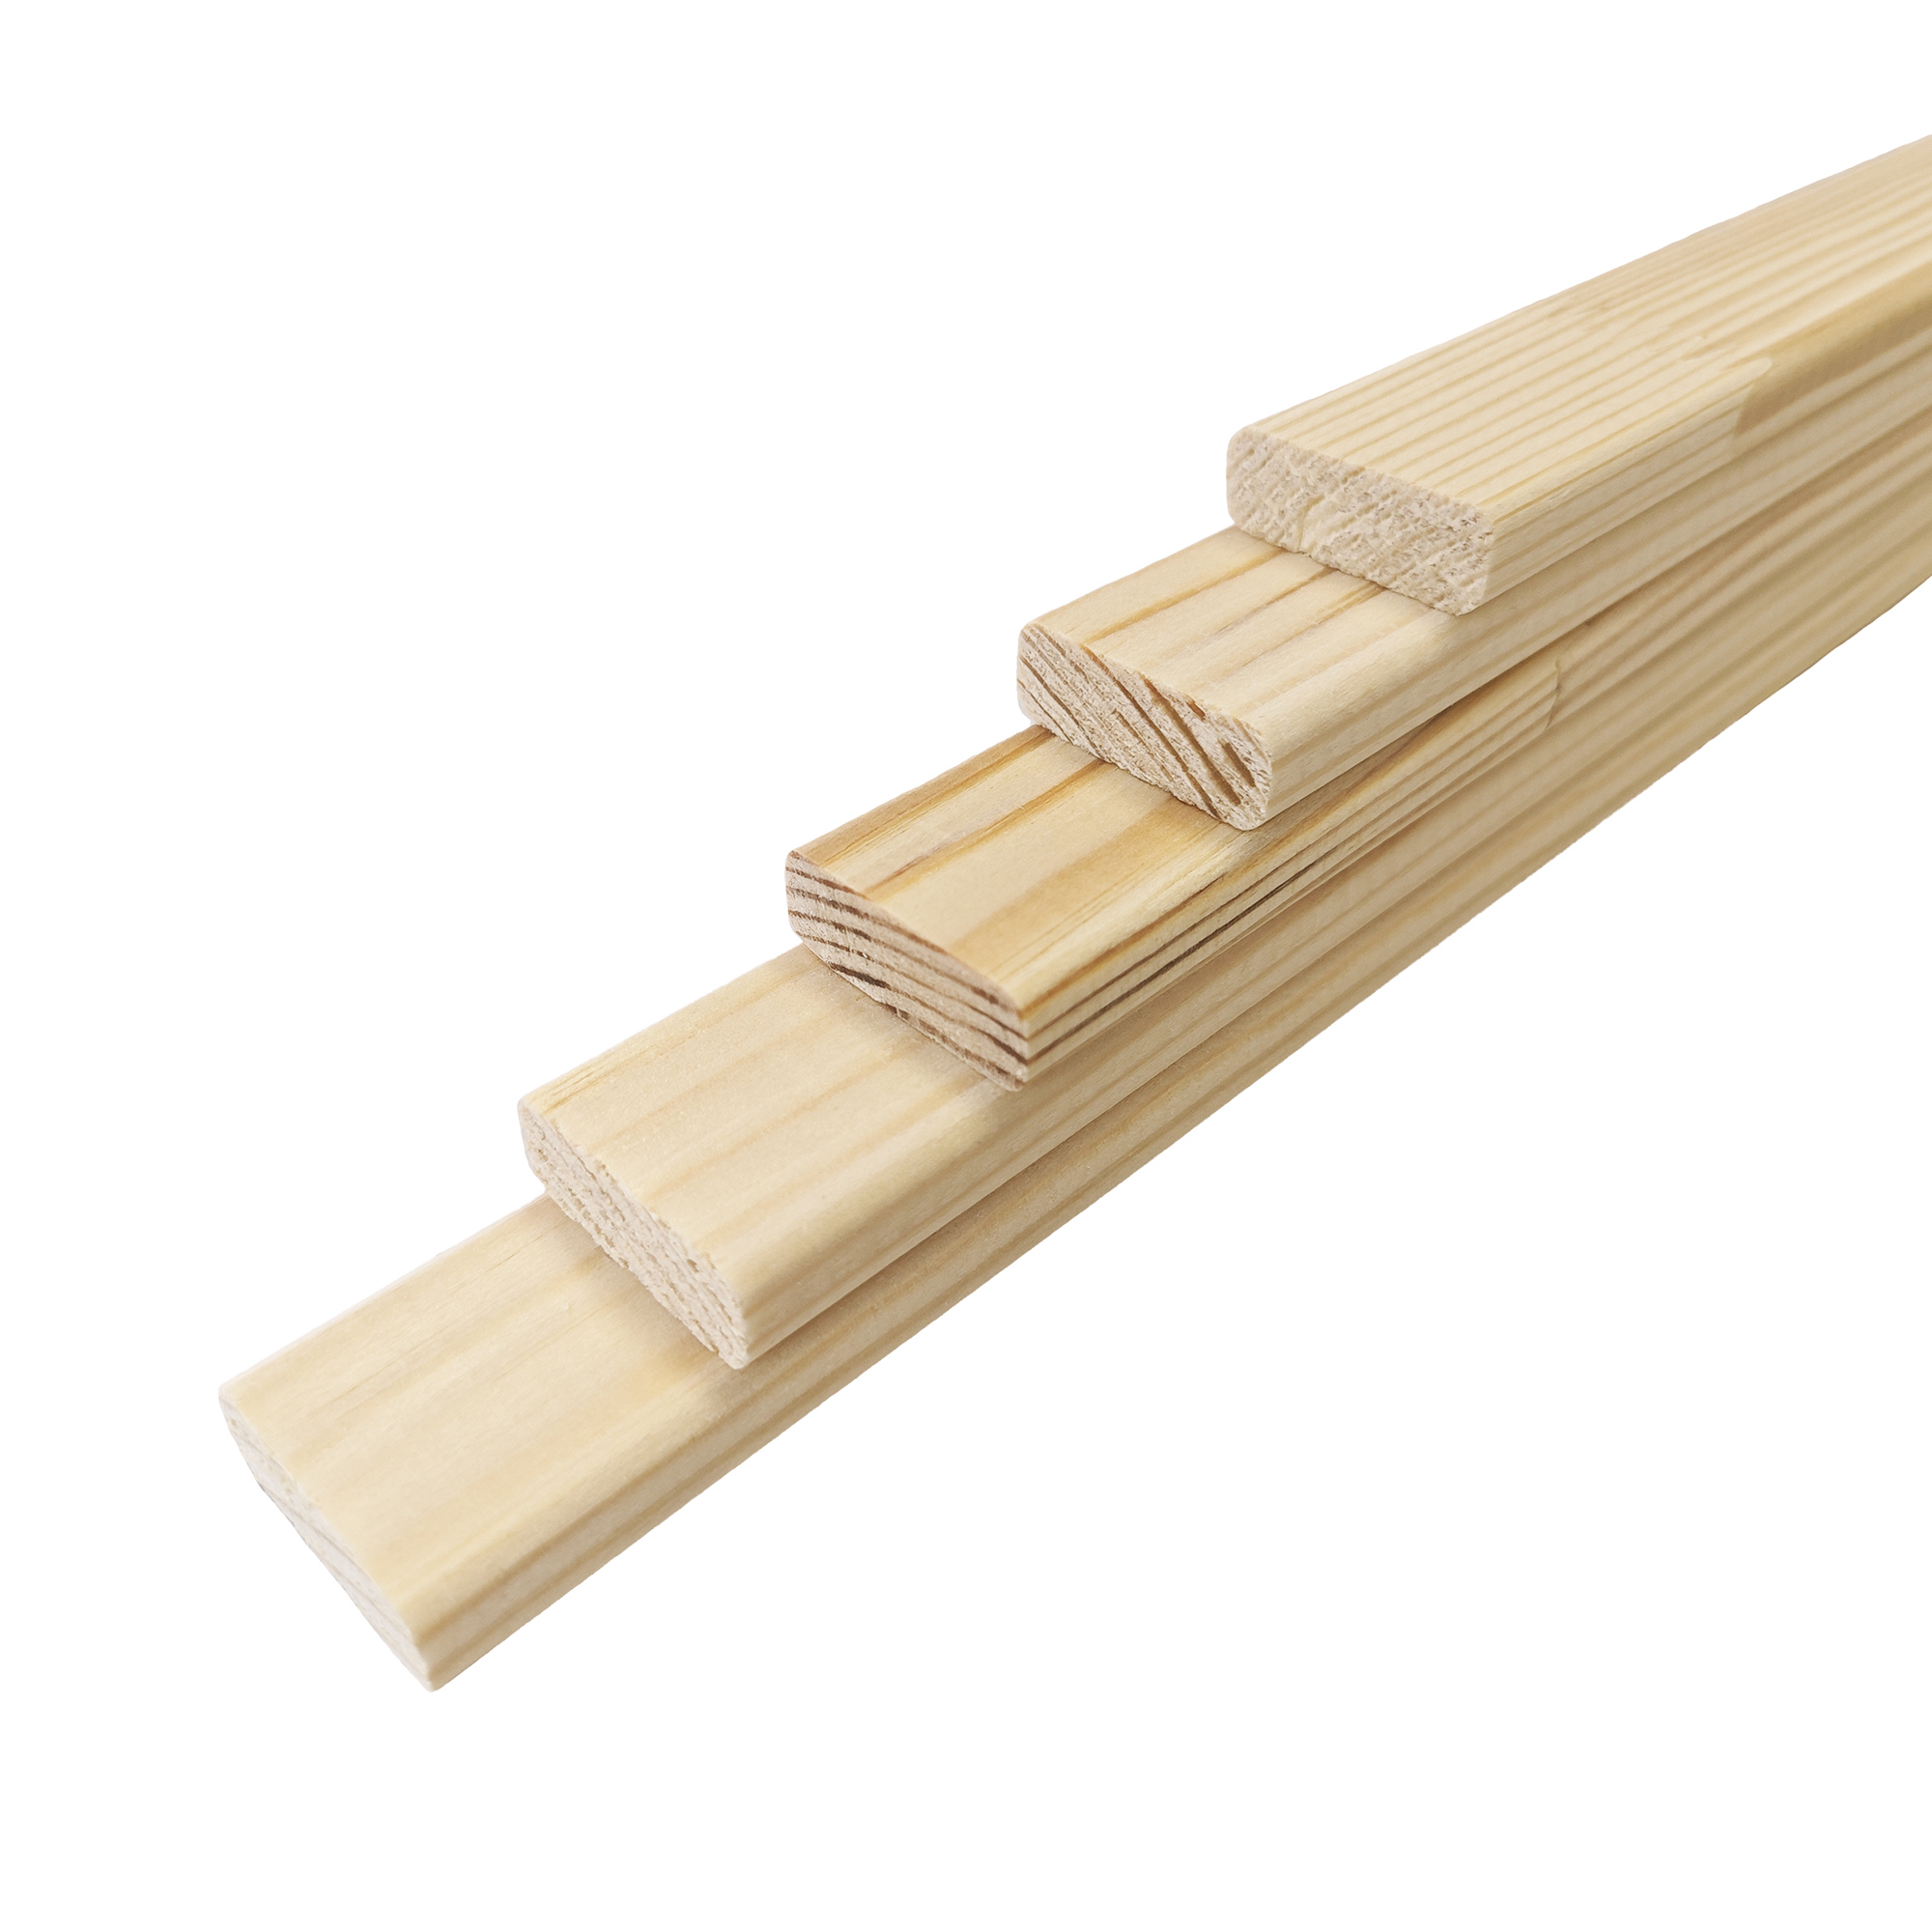  деревянная Timber&Style 1000х29х10мм строганая сращенная сосна .